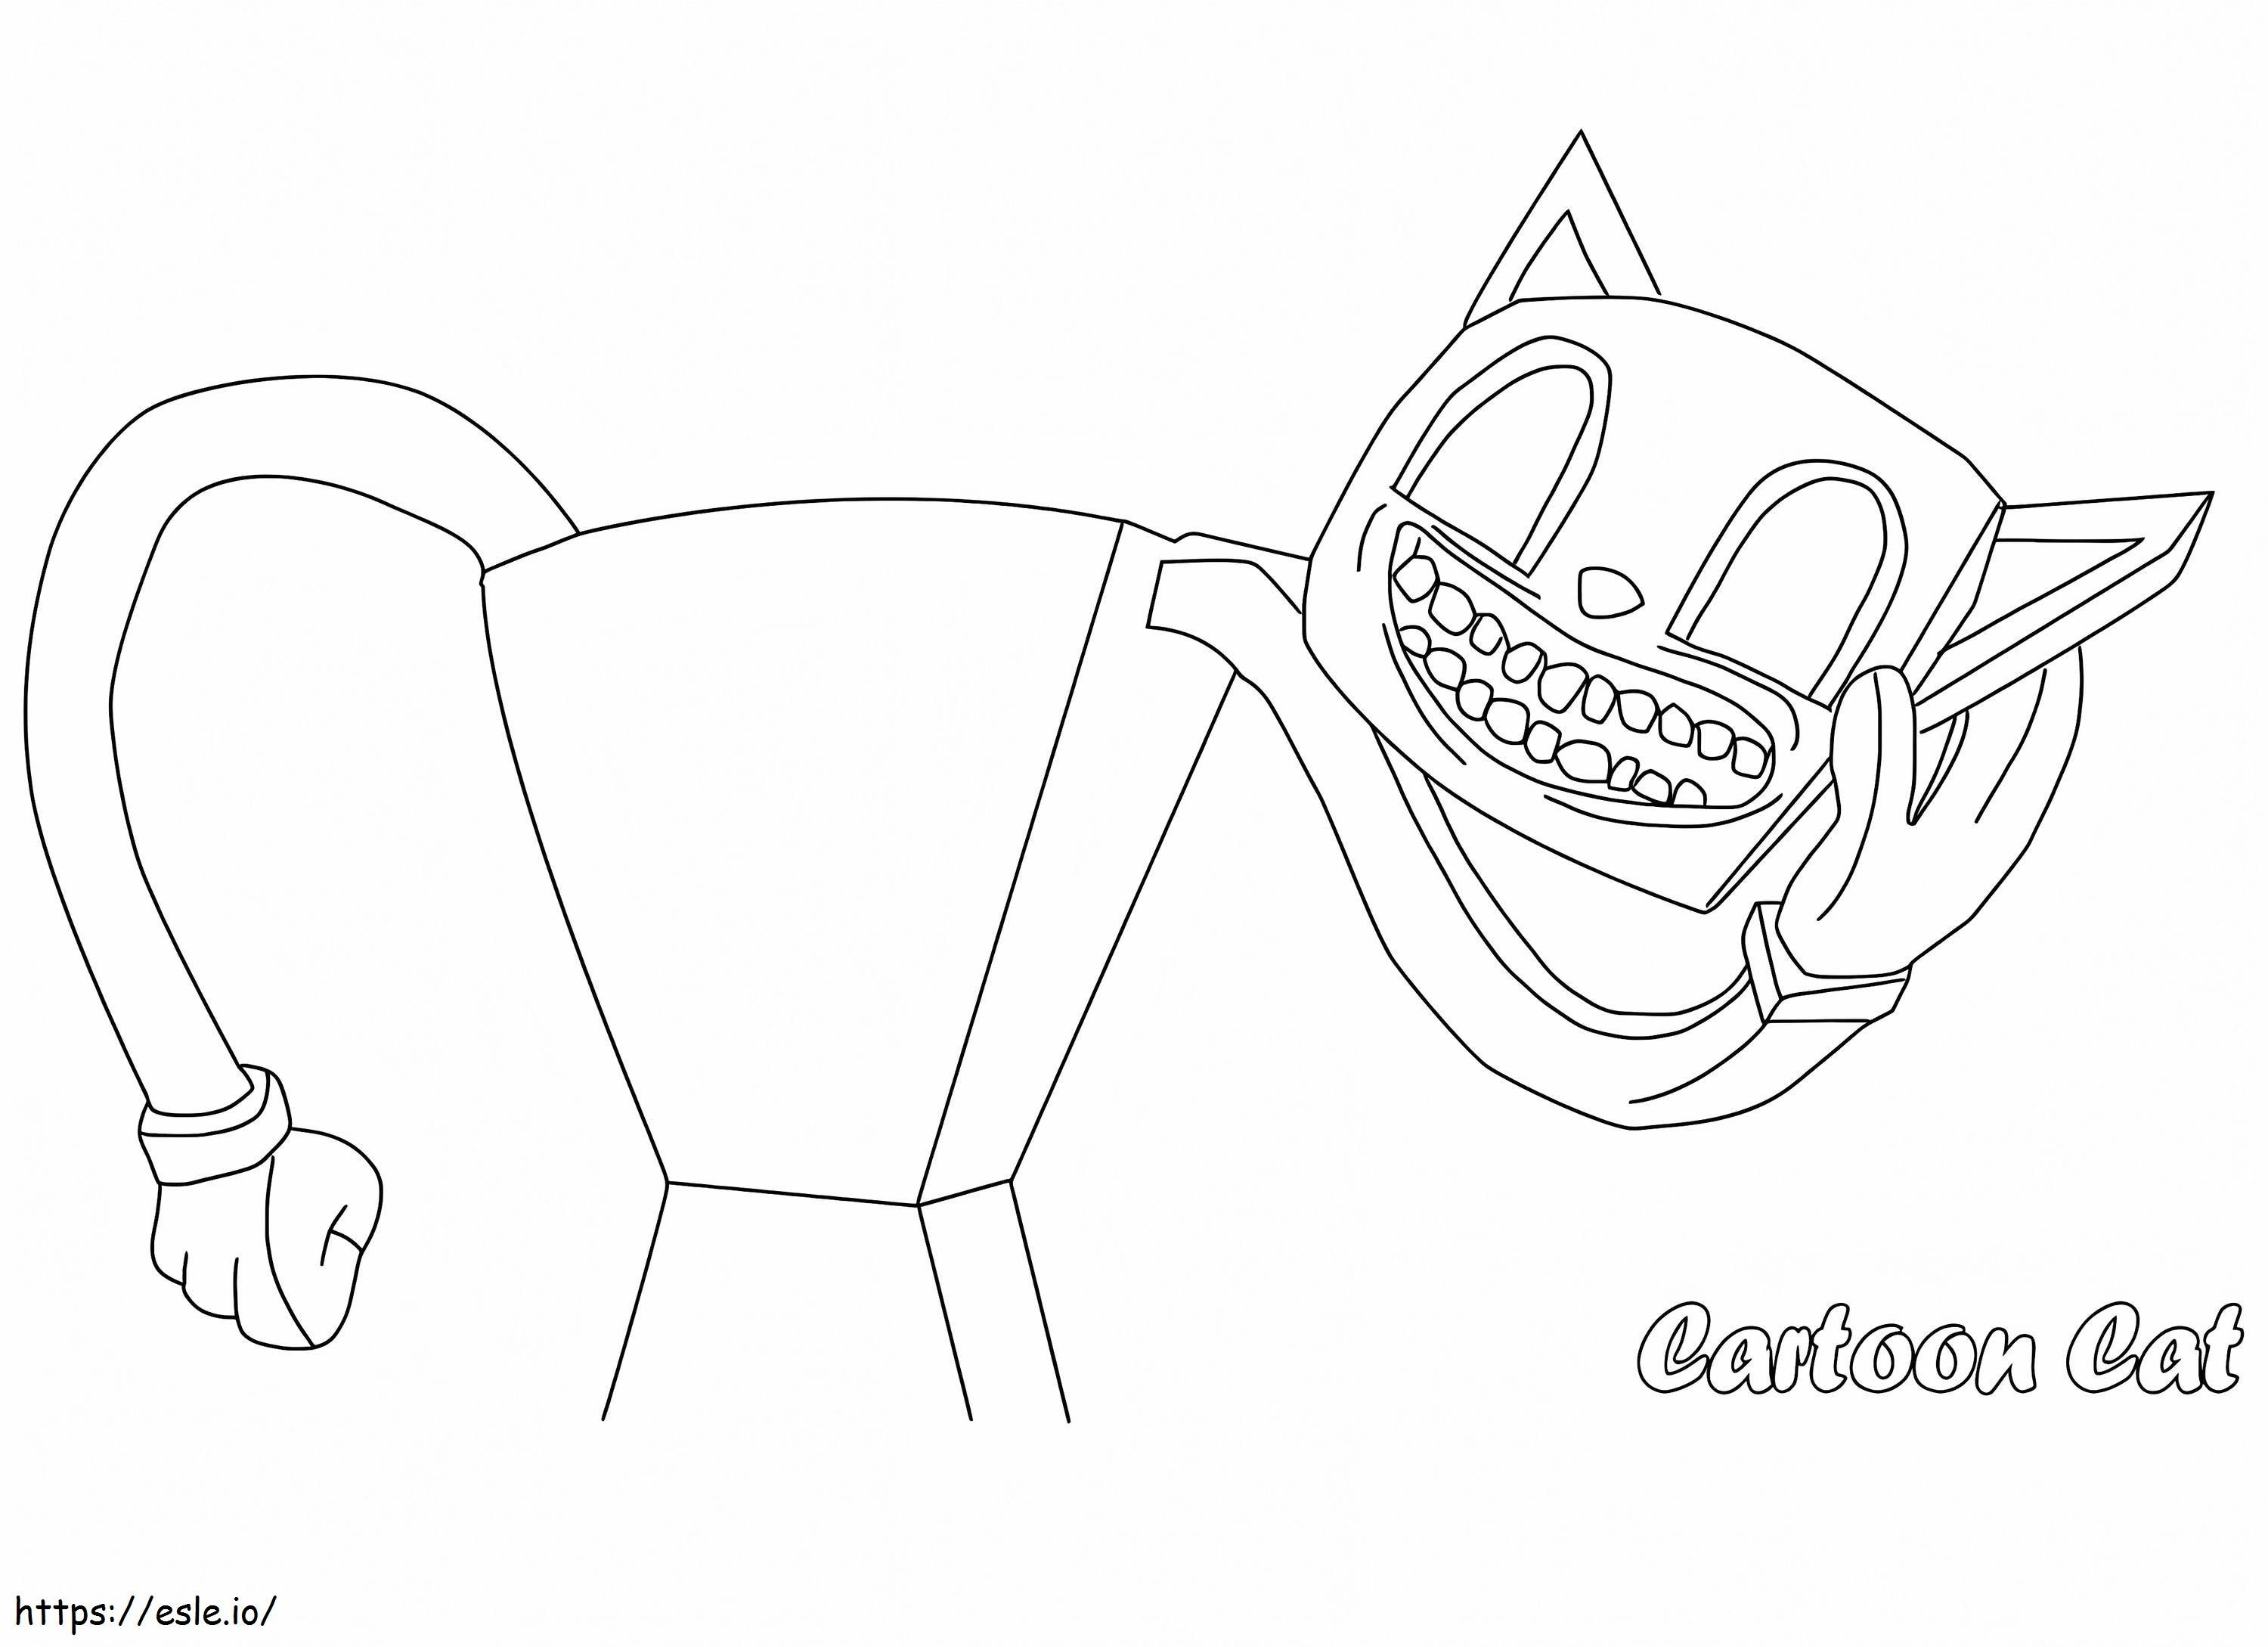 Gato de desenho animado imprimível 1 para colorir